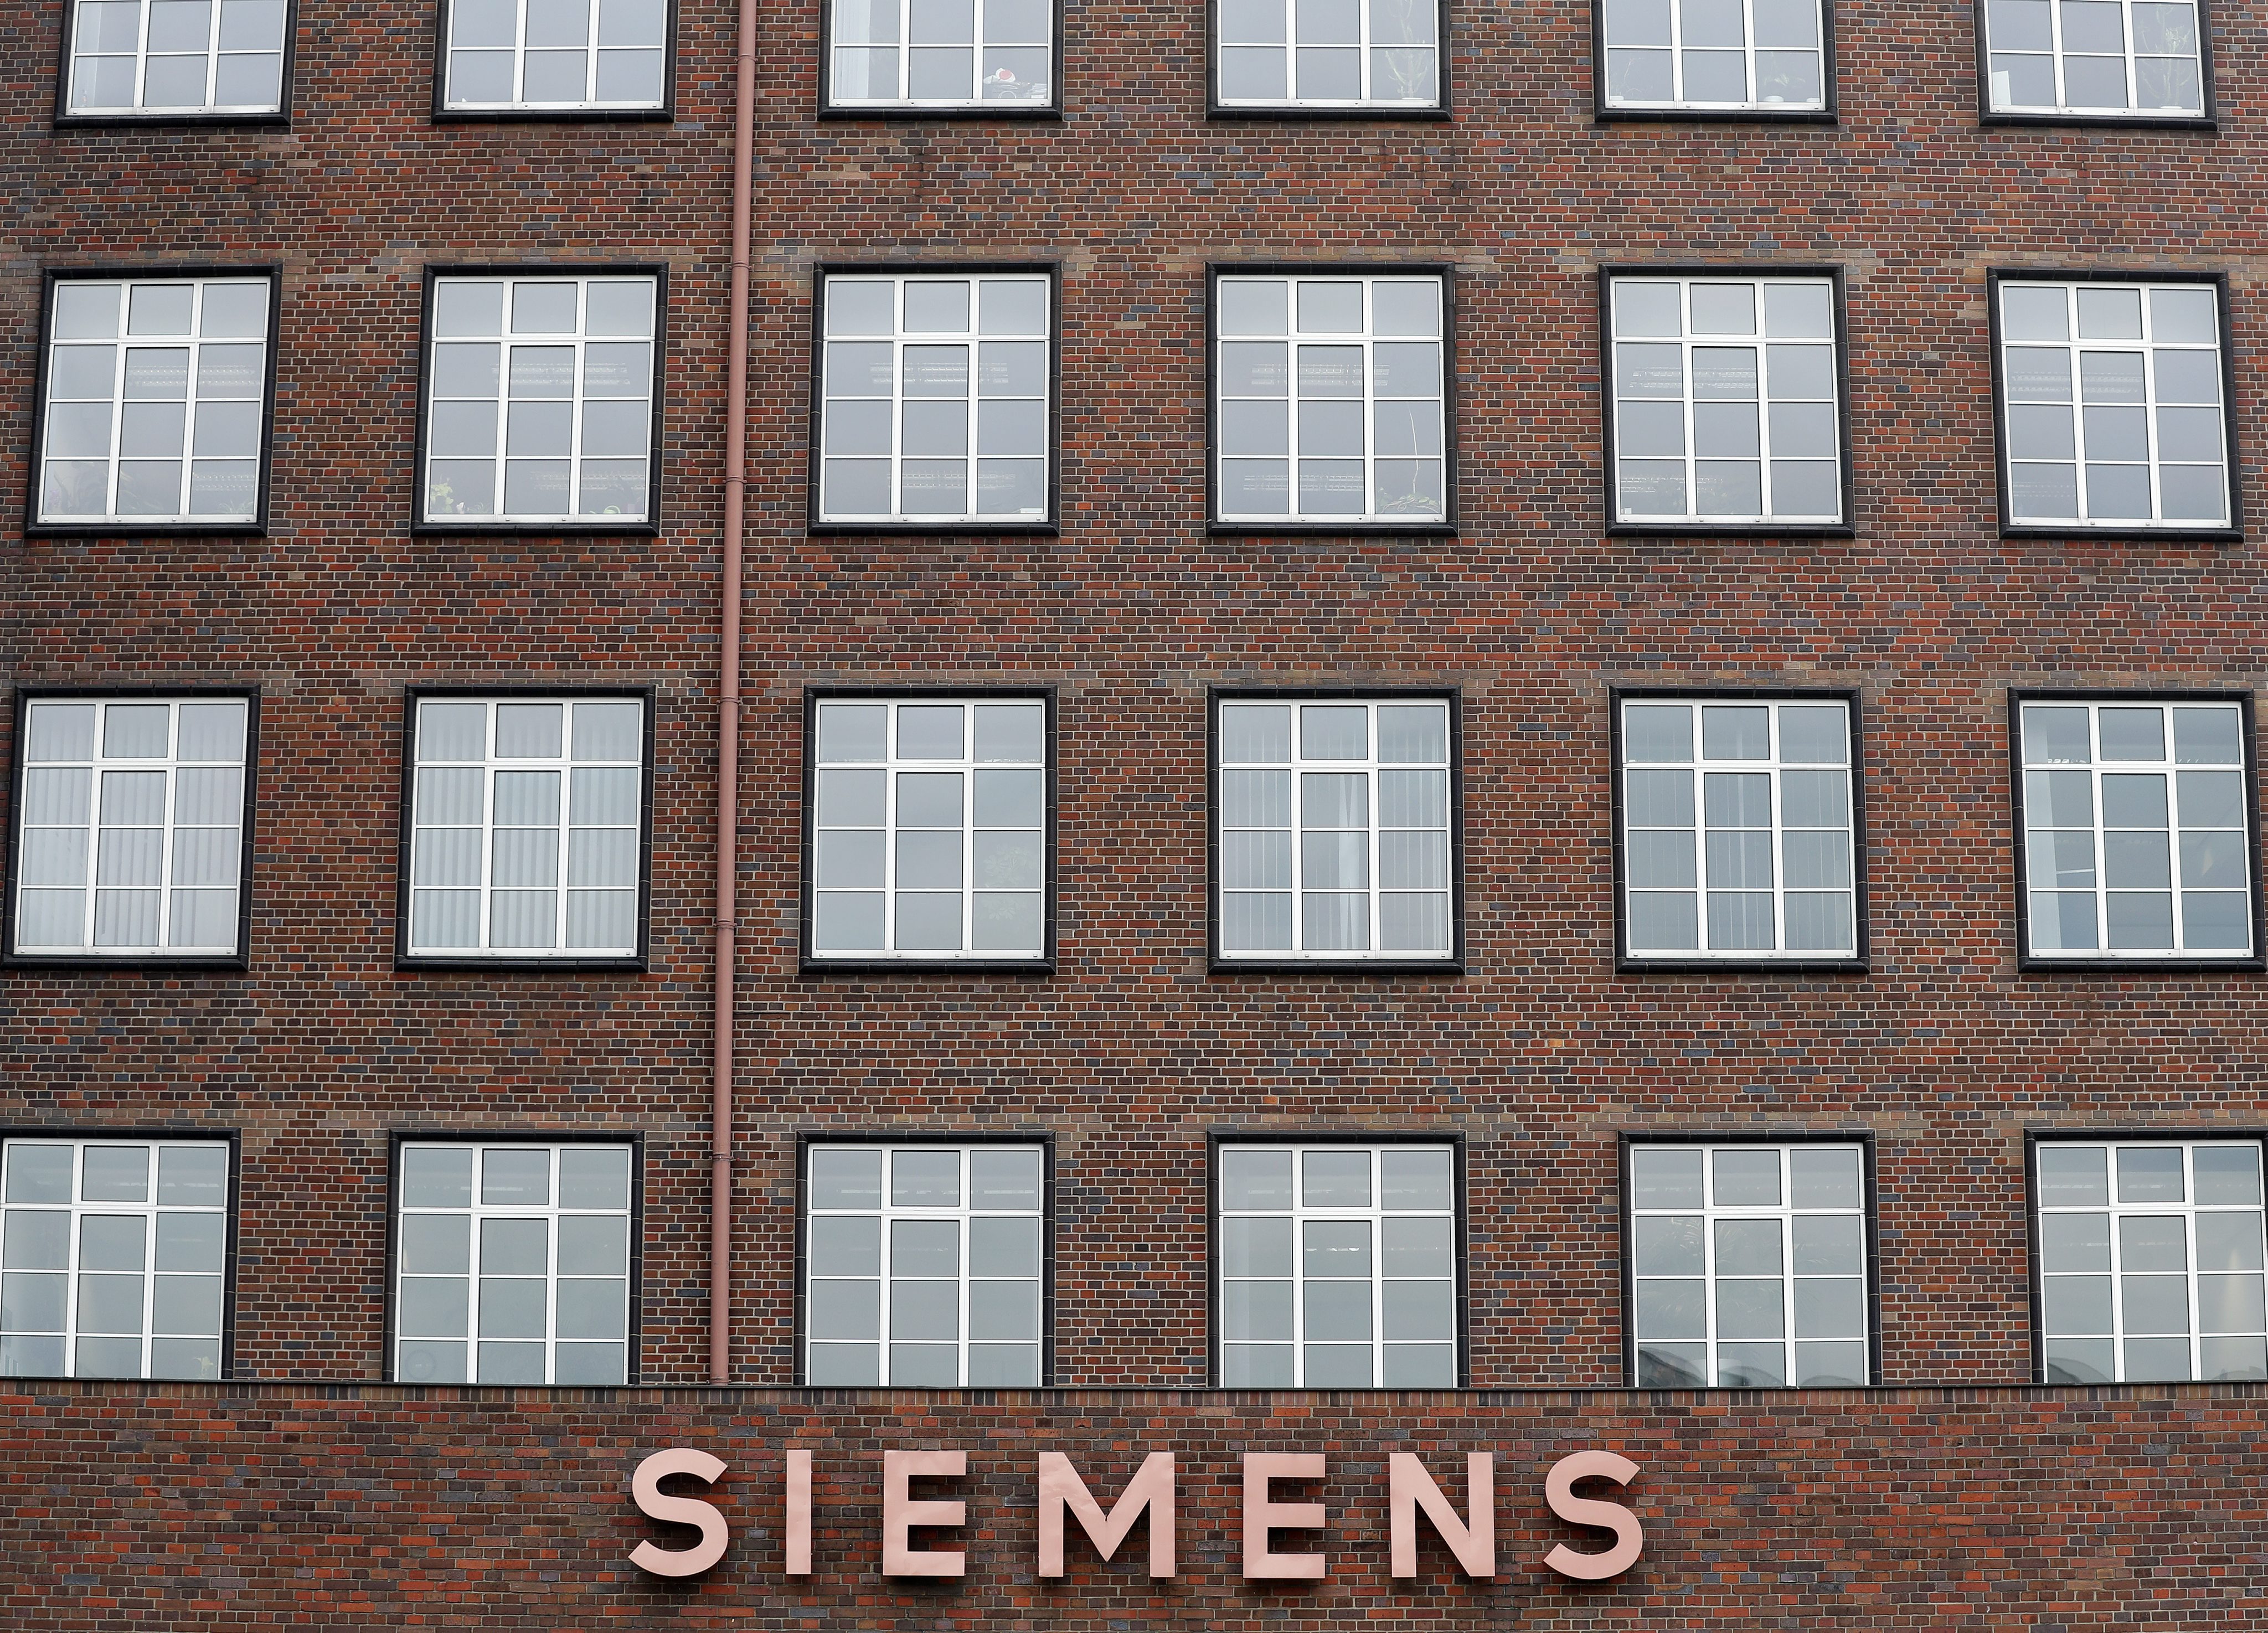 Ξεκινά η δίκη της Siemens για την σύμβαση με τον ΟΤΕ, το 1997